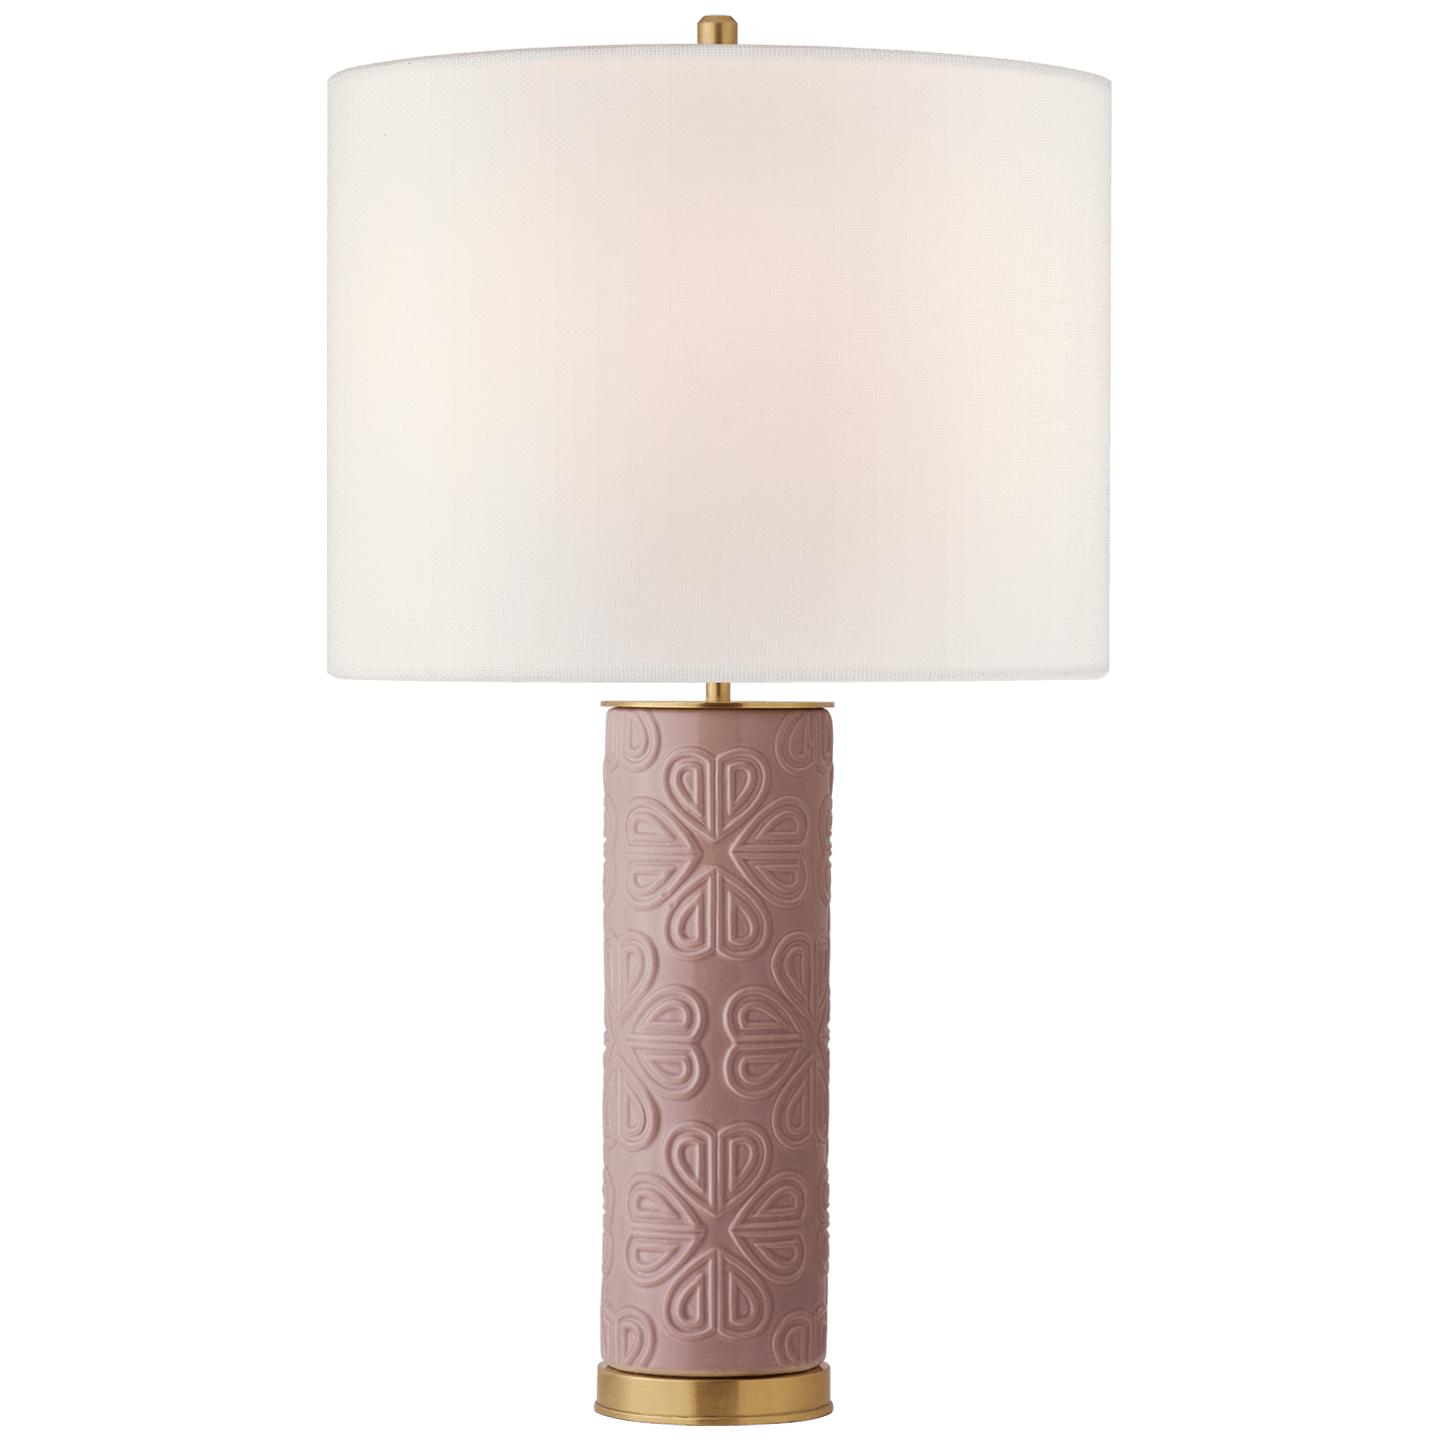 Купить Настольная лампа Clary Large Table Lamp в интернет-магазине roooms.ru